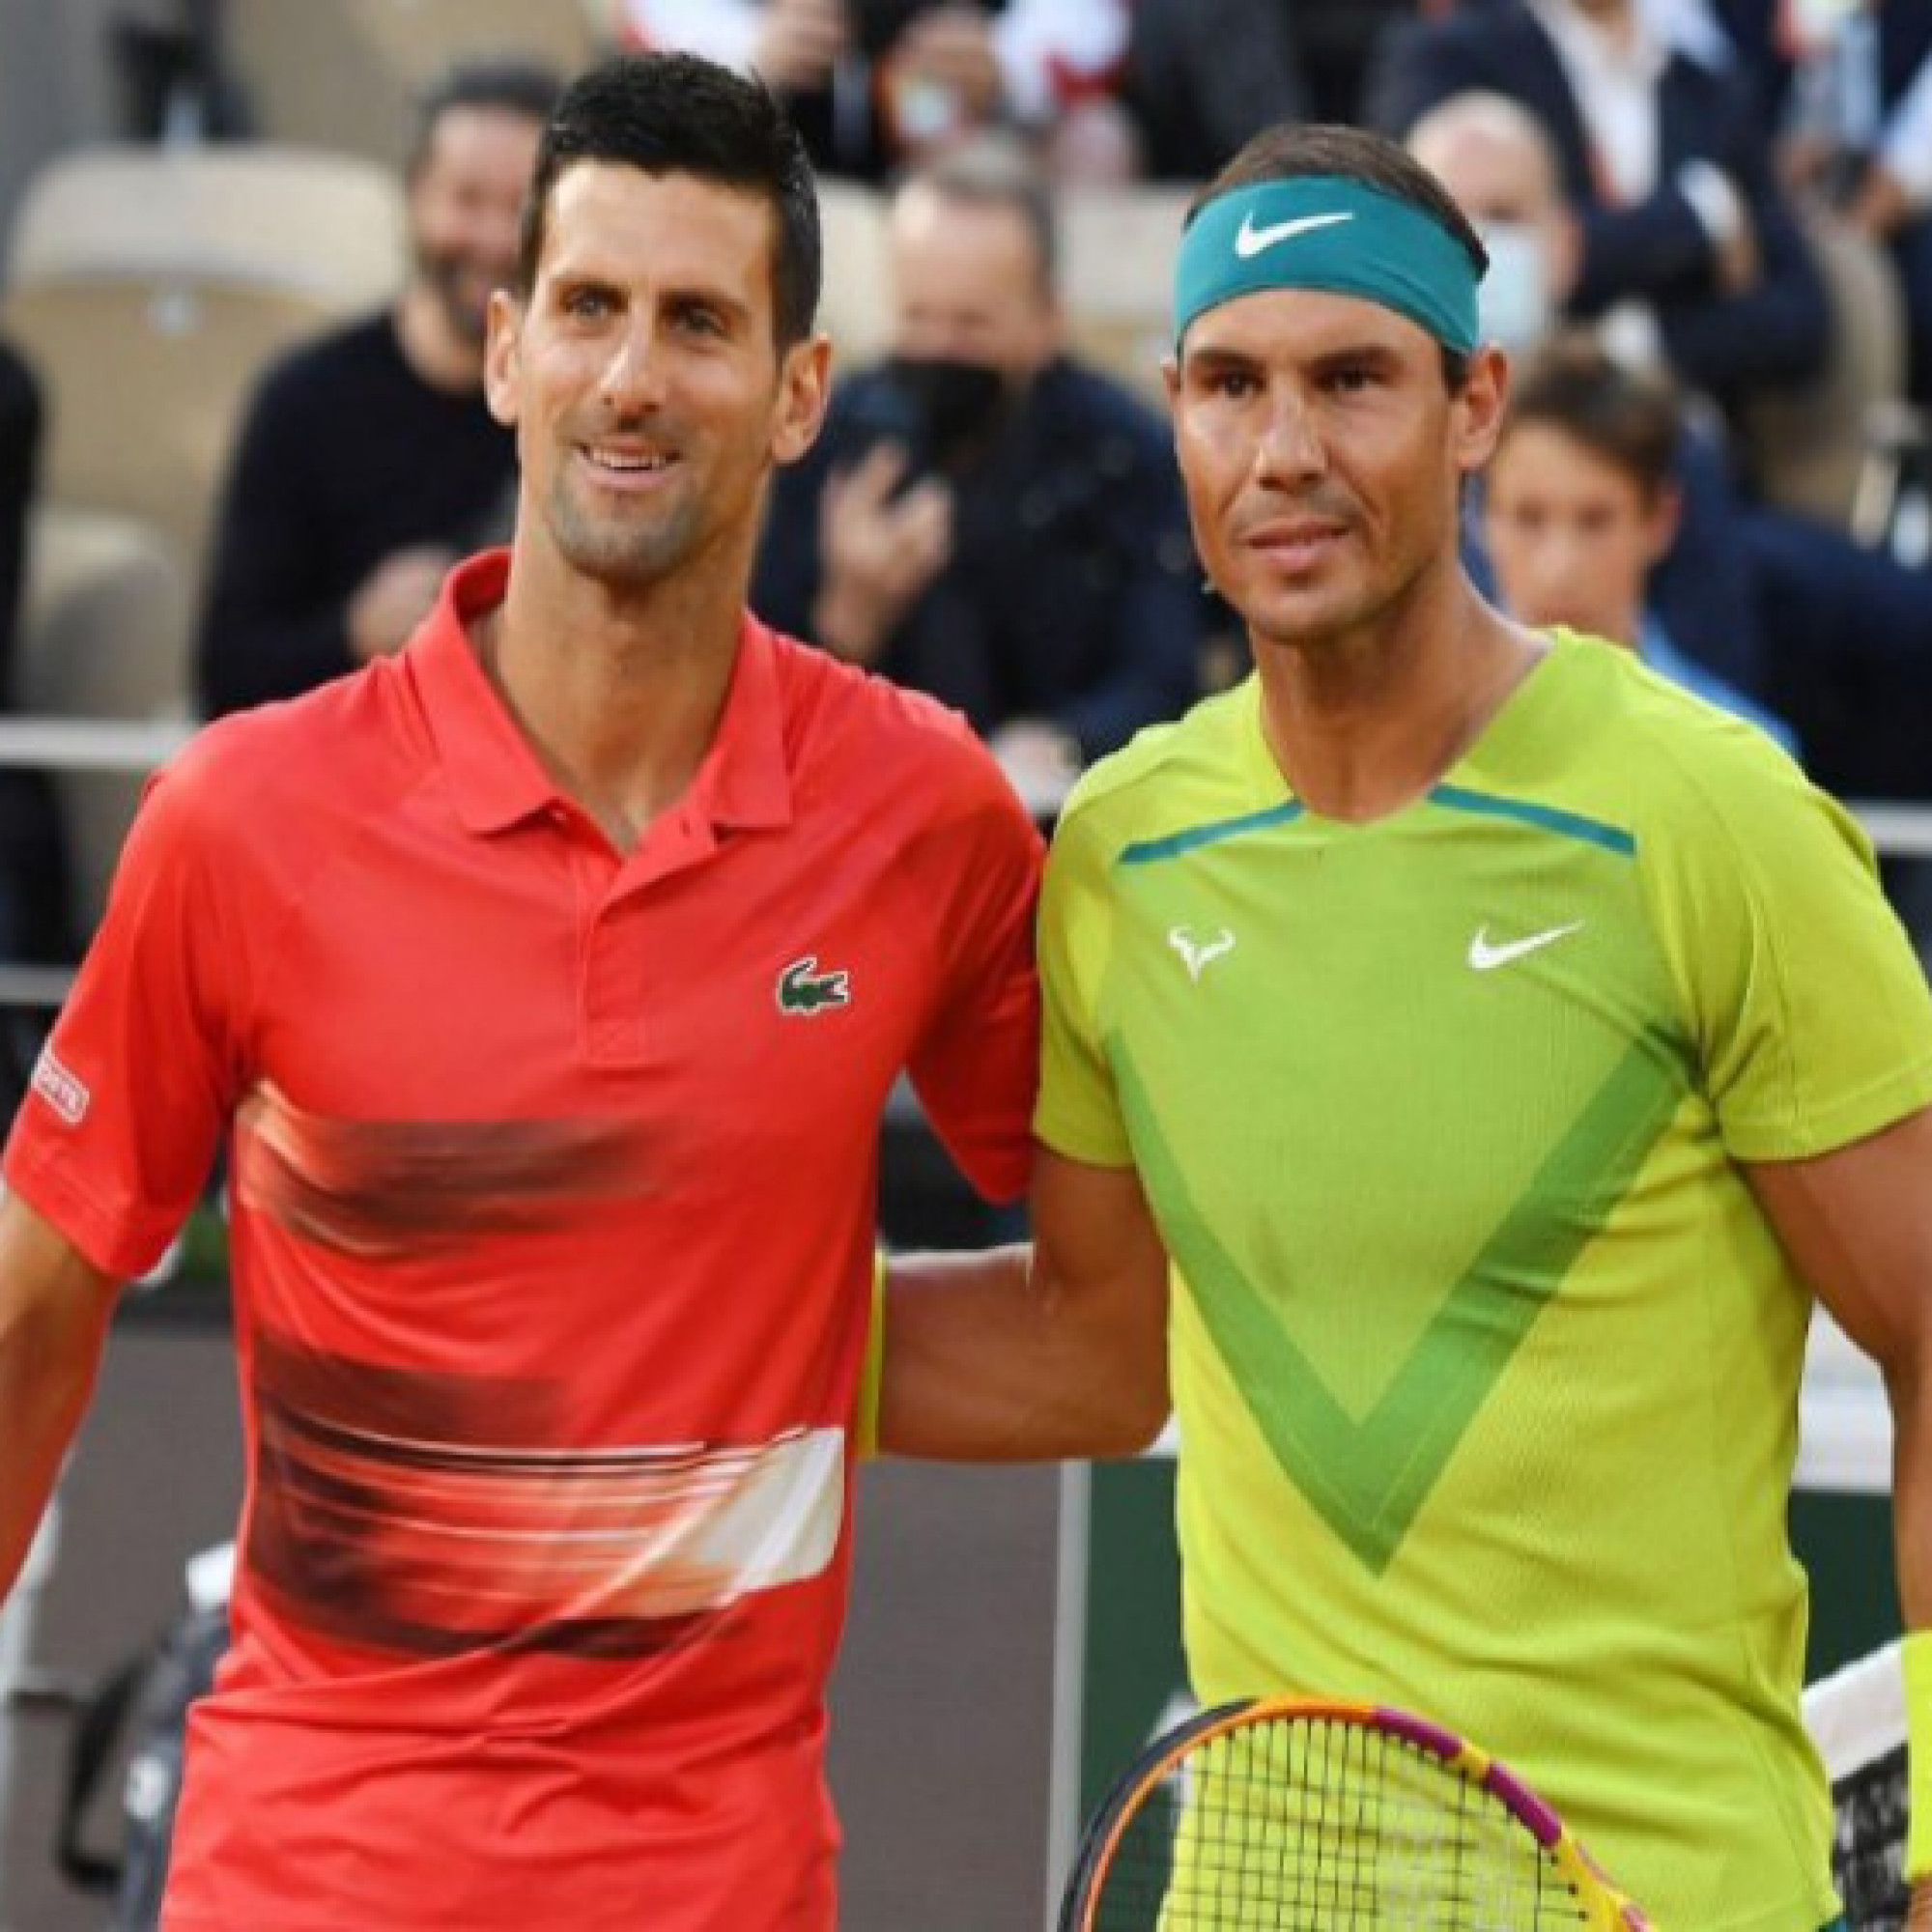  - Chú Nadal chưa phục Djokovic vô địch, tuyên bố vẫn kém cháu mình và Federer điều này